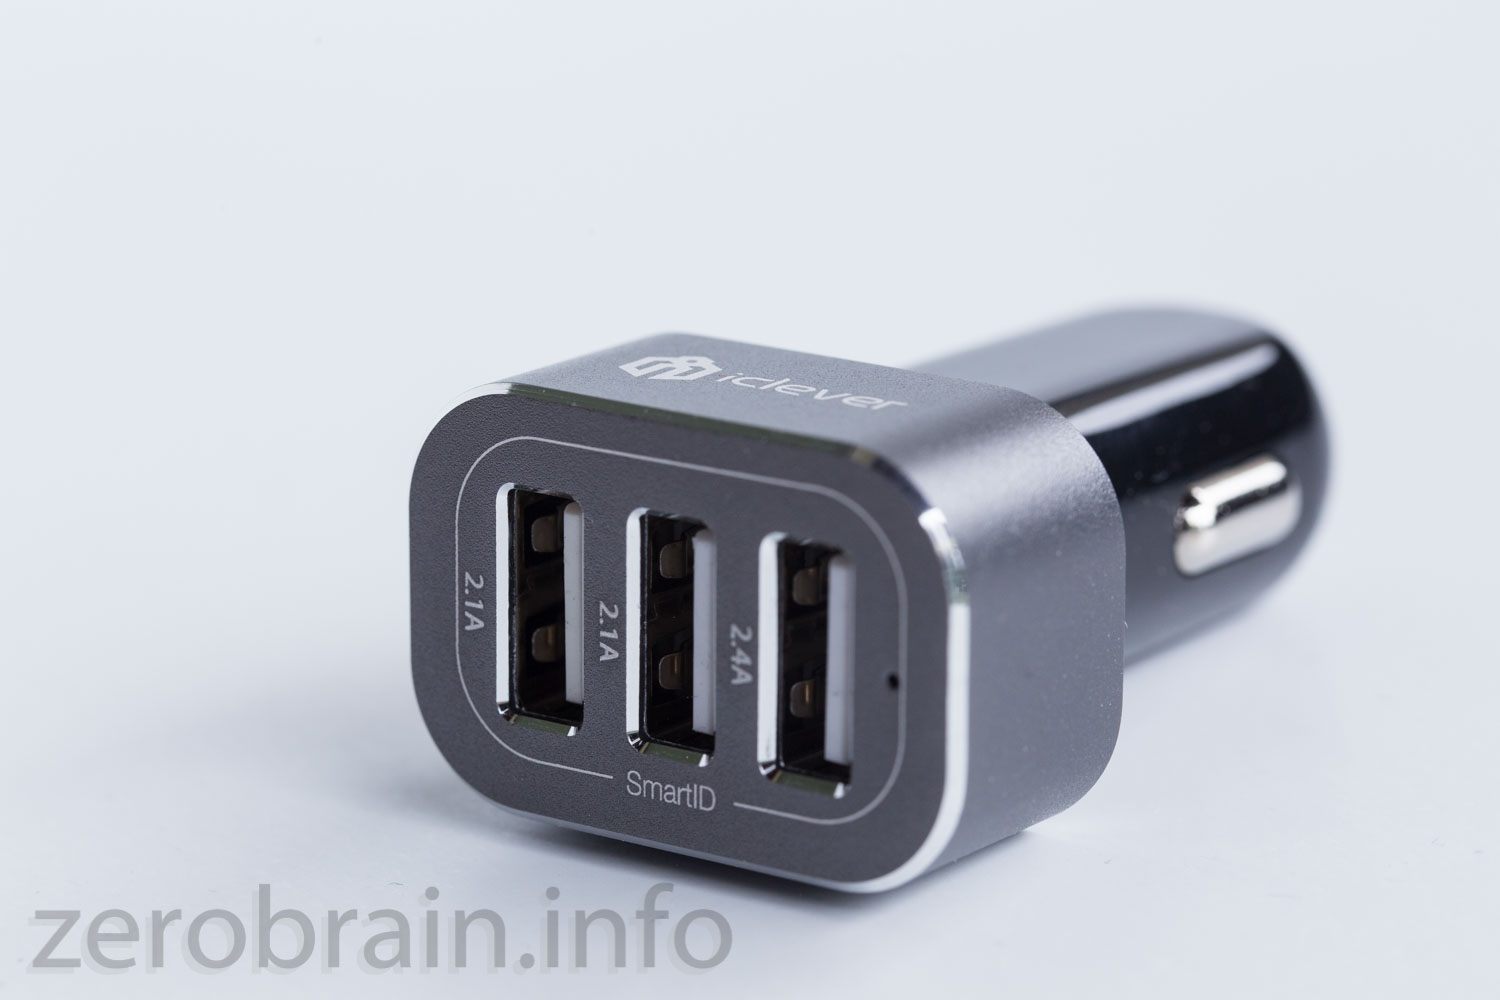 Test: iClever Auto USB KFZ Ladegerät (33W 6,6A 3 Port) — zerobrain